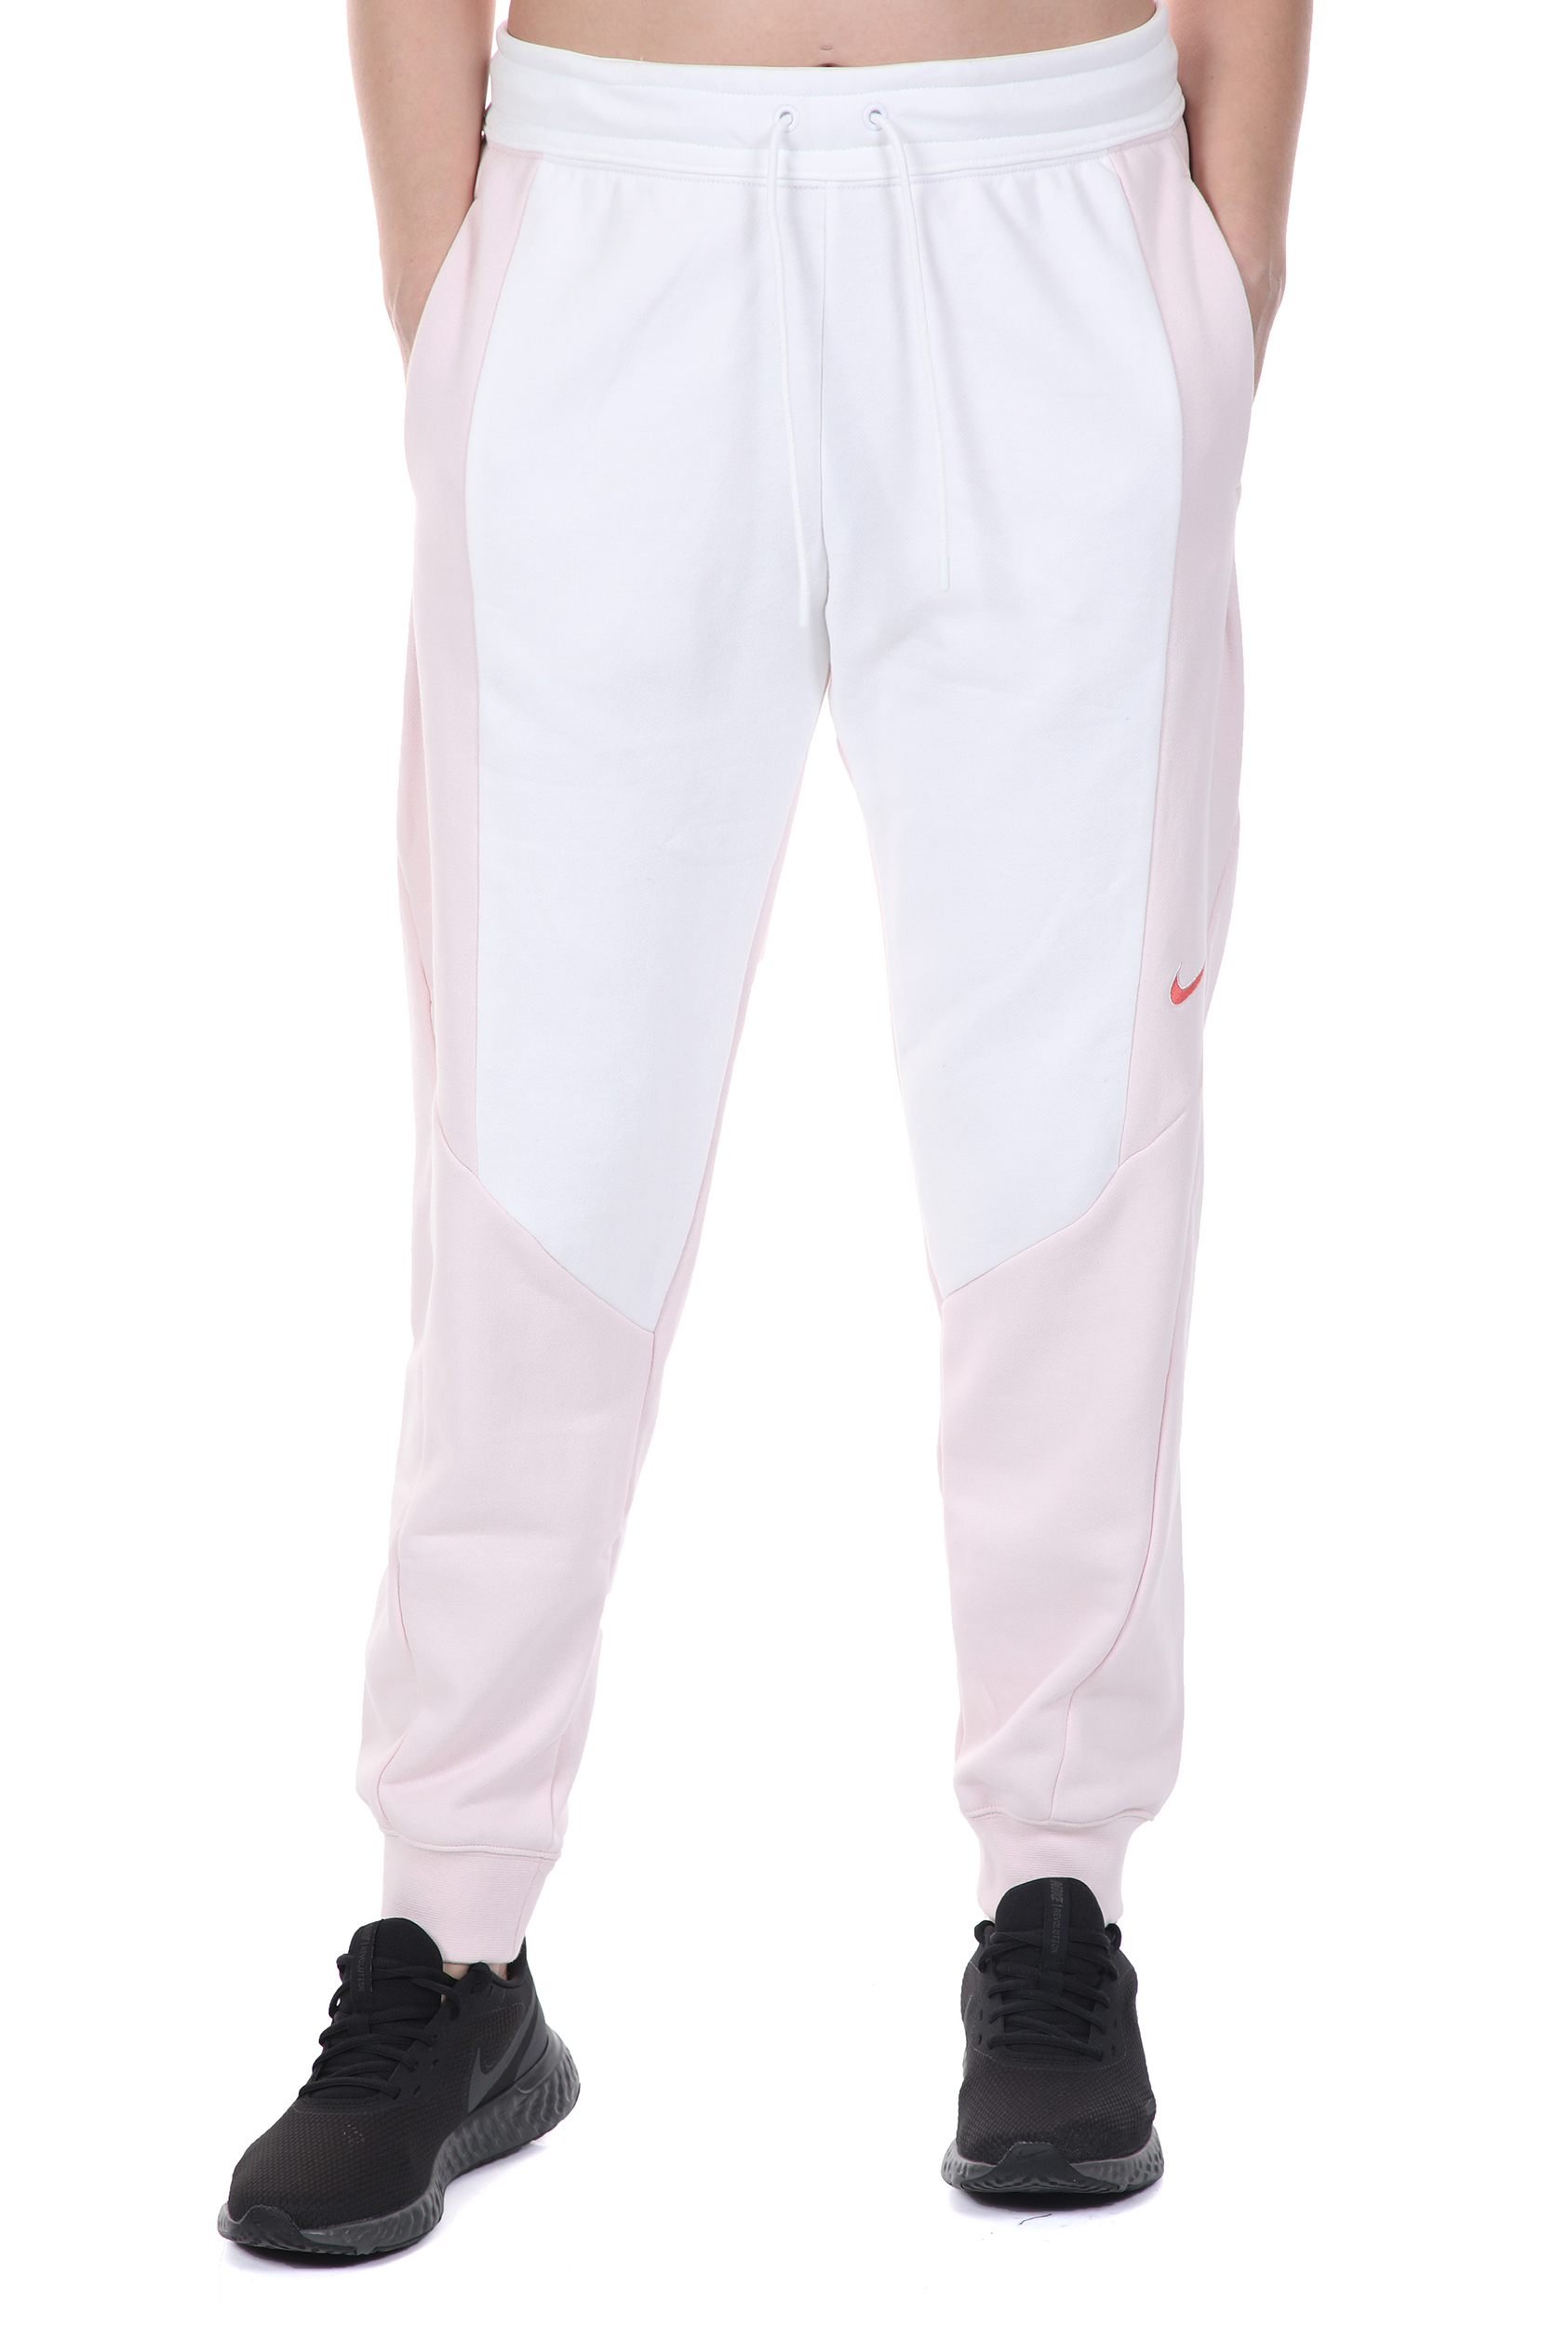 Γυναικεία/Ρούχα/Αθλητικά/Φόρμες NIKE - Γυναικείο παντελόνι φόρμας NIKE NSW JOGGER PANT FT CB λευκό ροζ